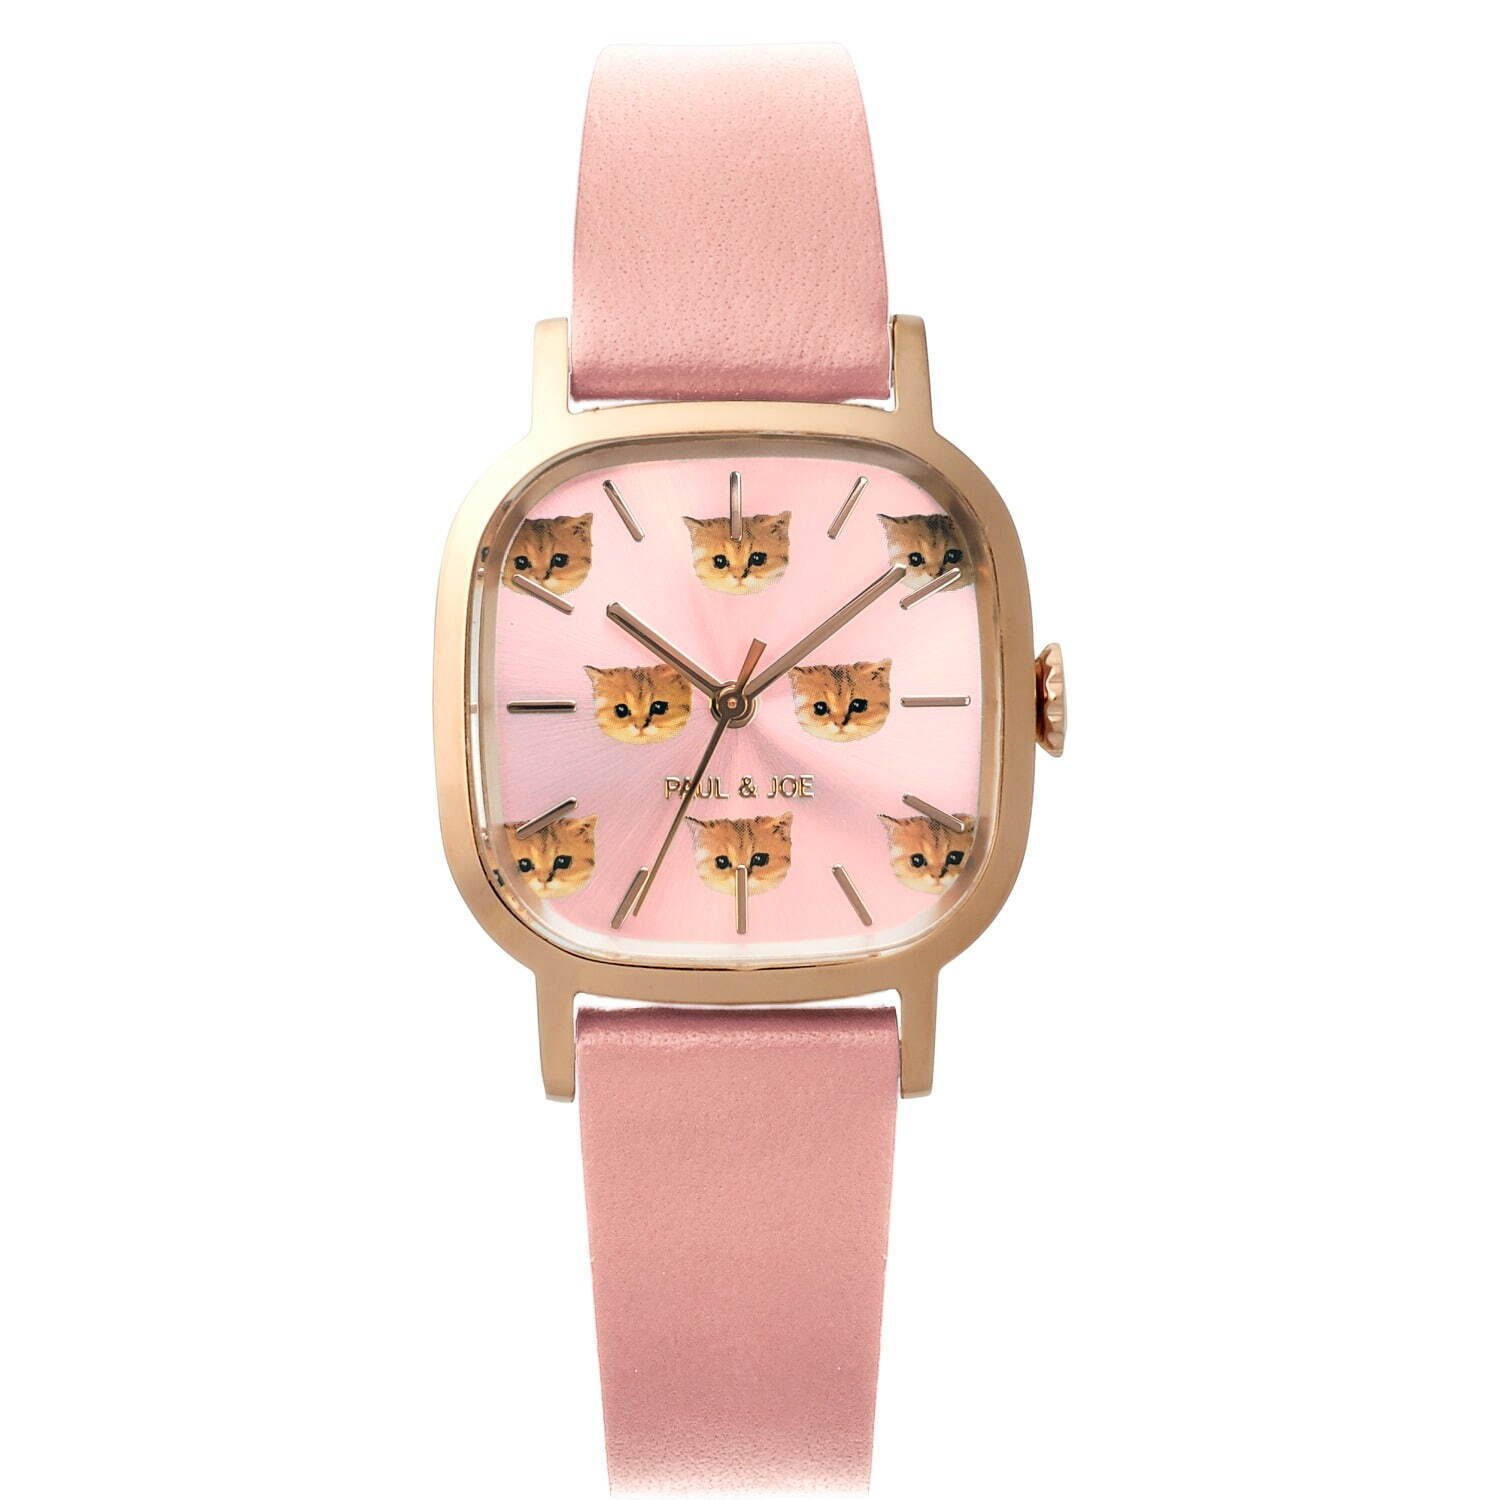 ポール & ジョー“猫のヌネット”モチーフの腕時計、ピンクカラーの ...